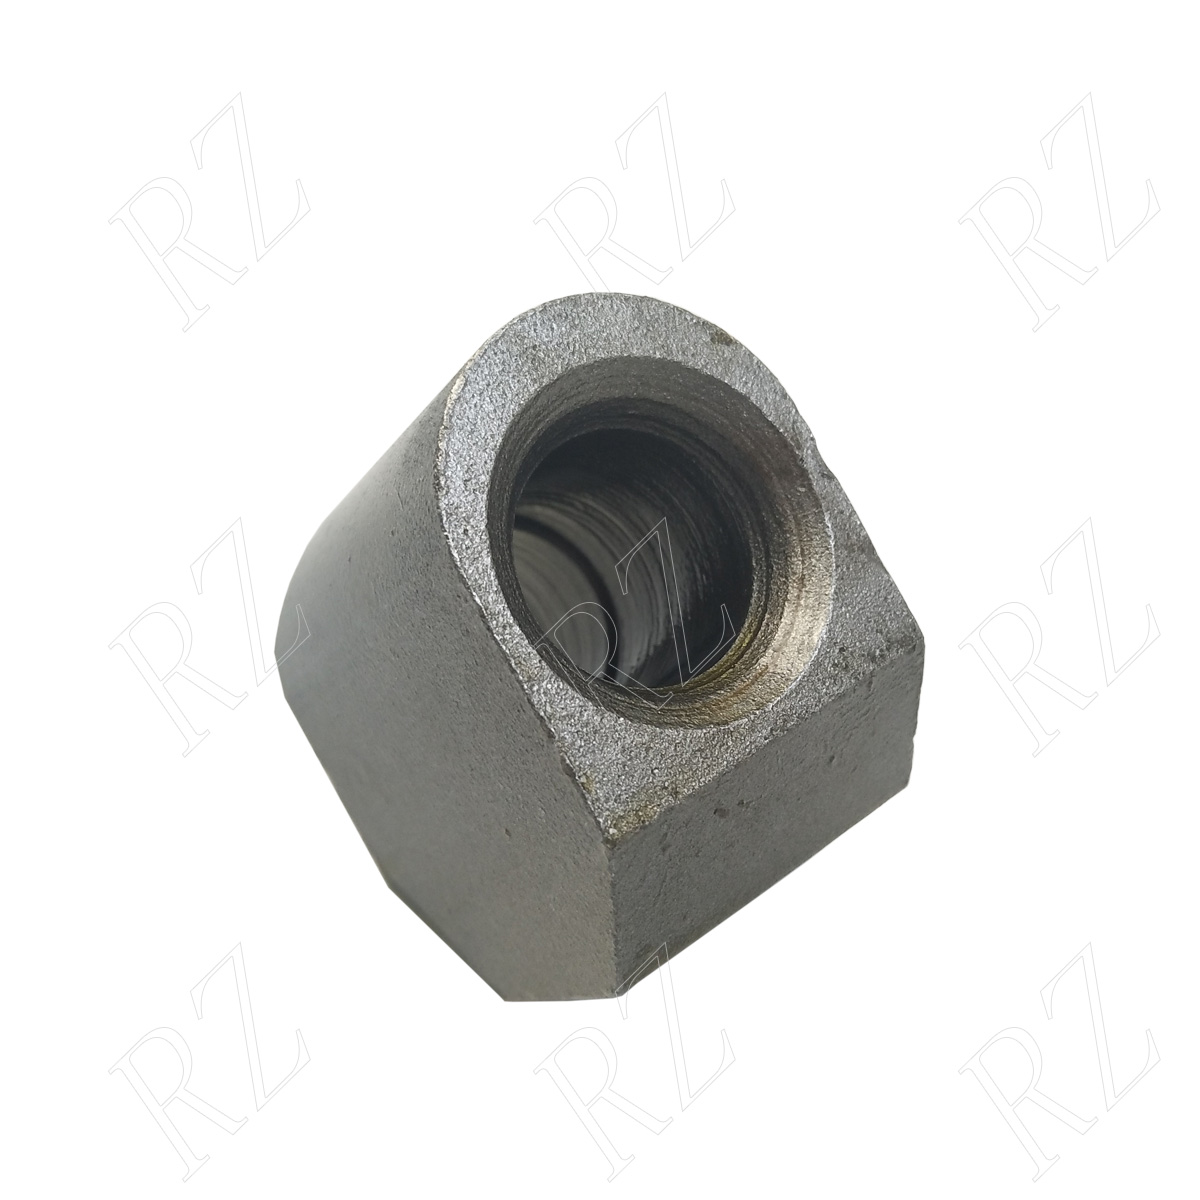 Bit holder welding block C20